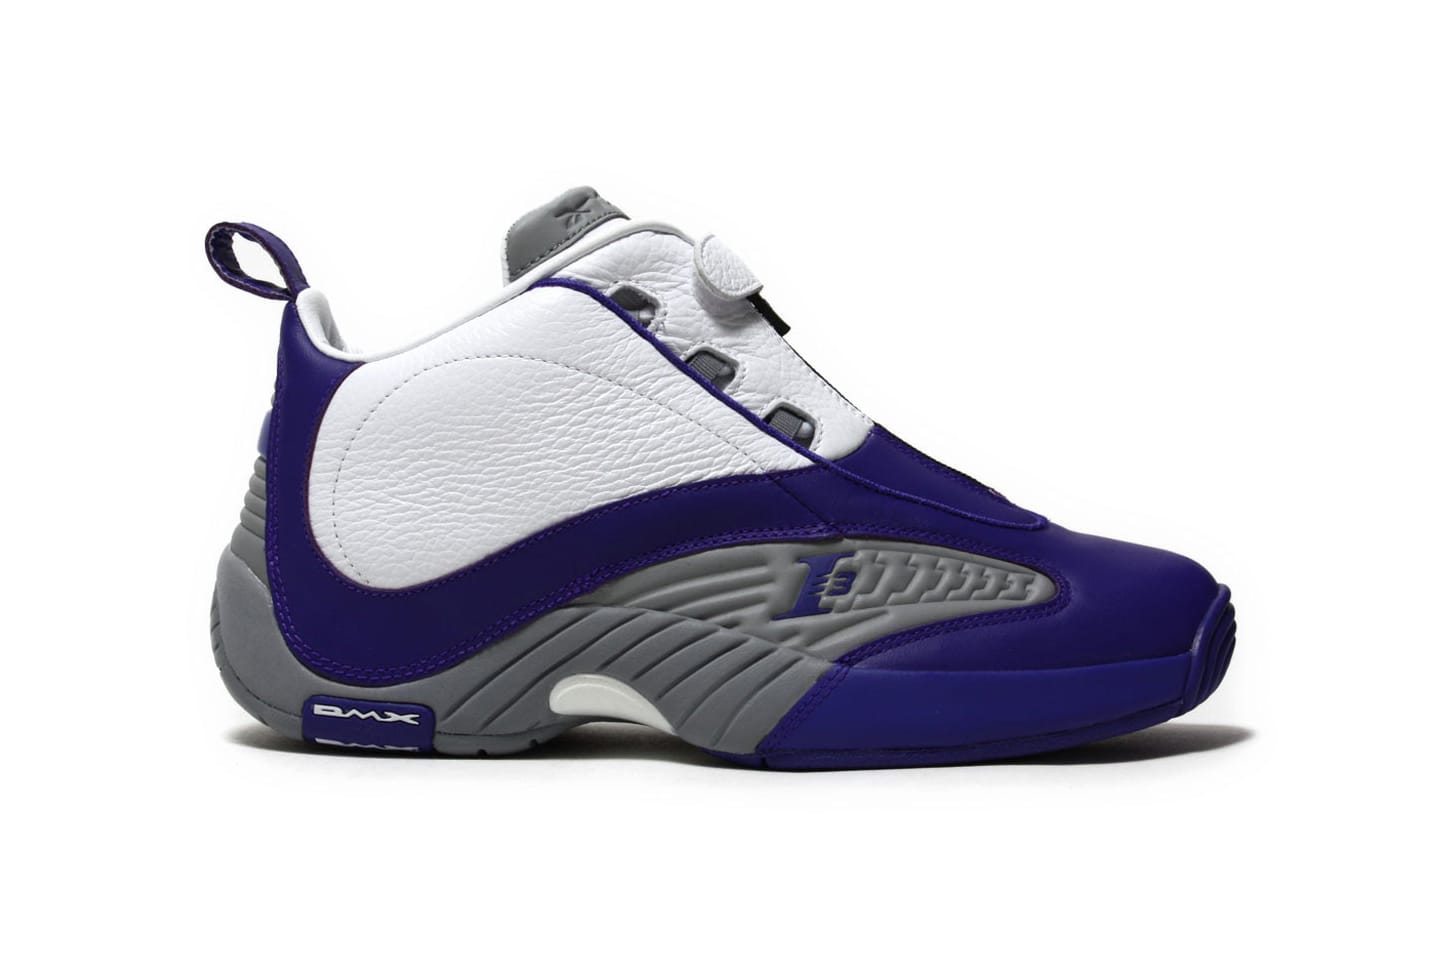 allen iverson shoes purple